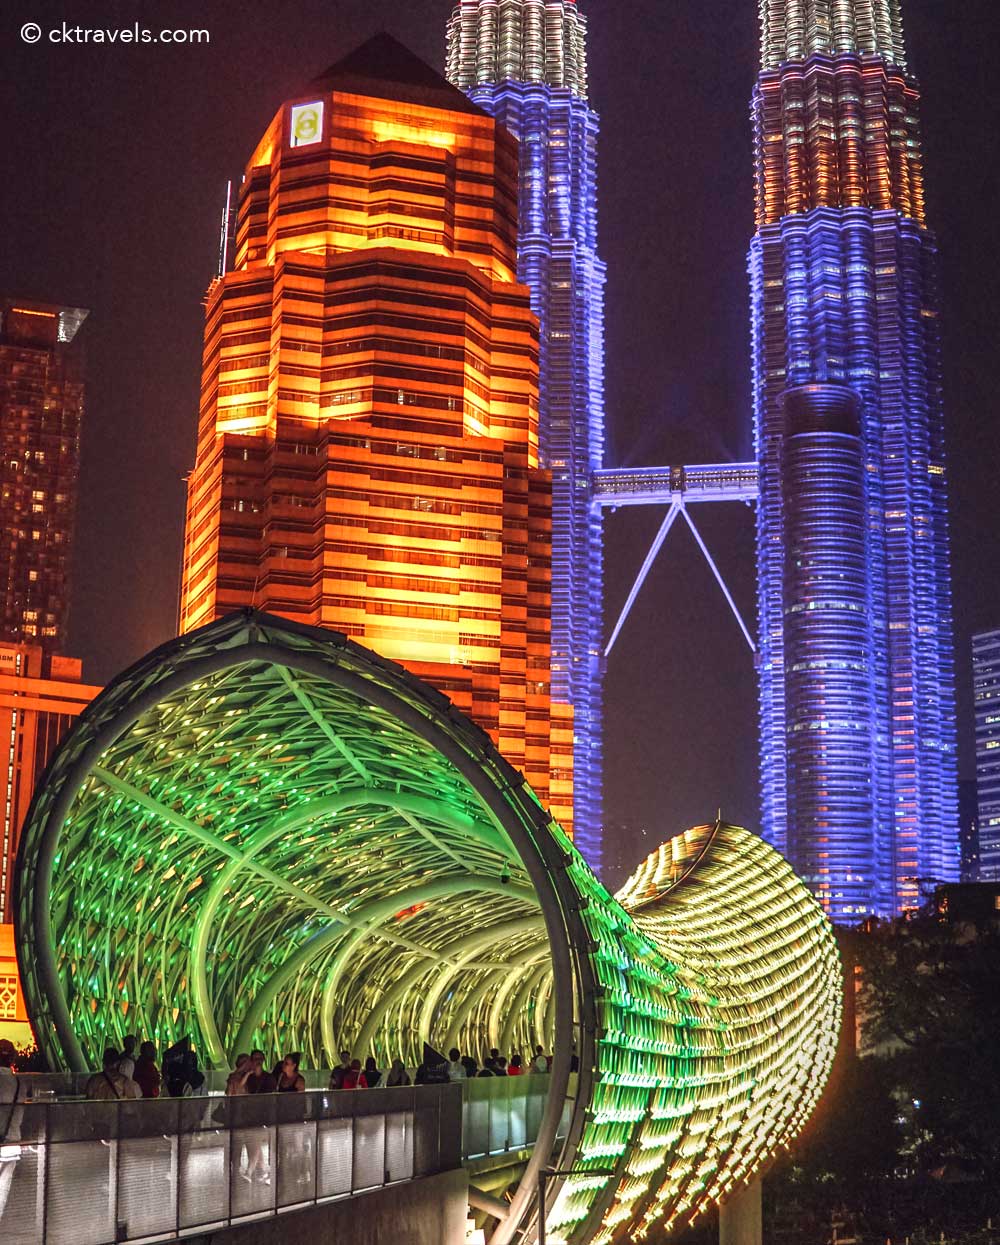 Saloma Bridge and petronas towers night in Kuala Lumpur, Malaysia